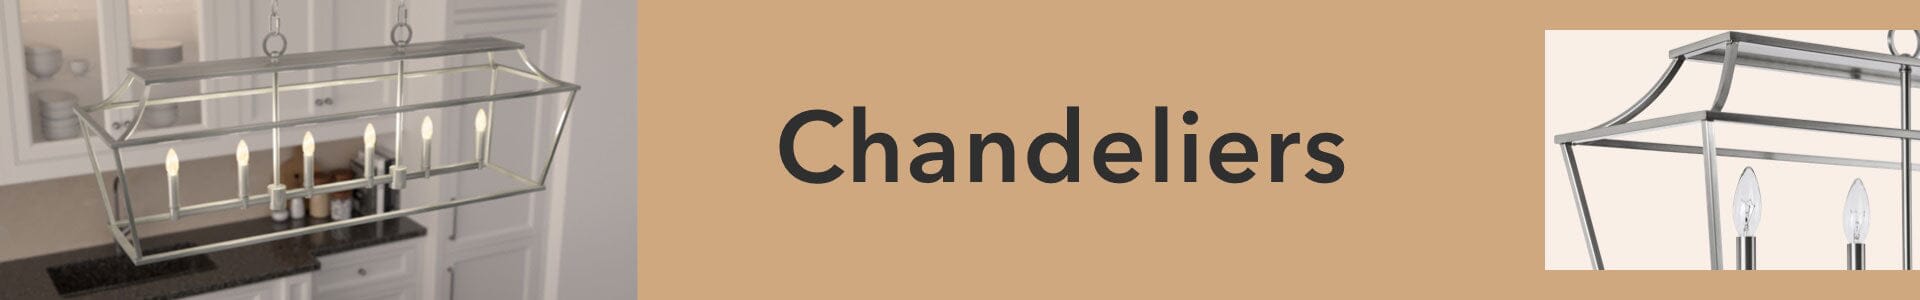 Chandelier Light Fixtures